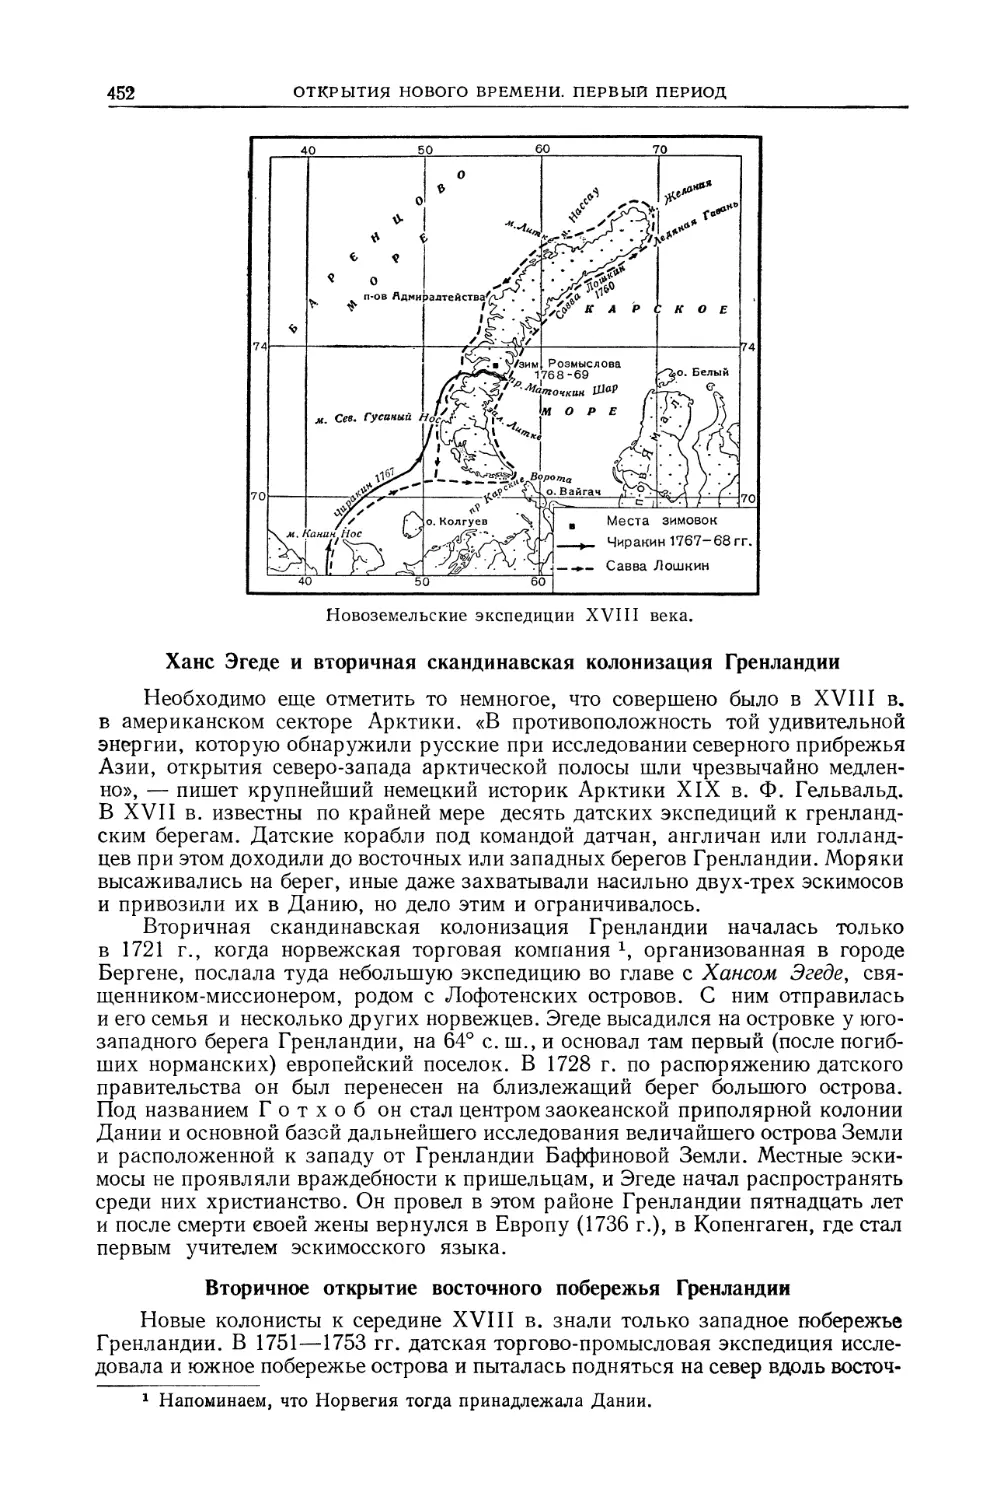 Ханс Эгеде и вторичная скандинавская колонизация Гренландии
Вторичное открытие восточного побережья Гренландии